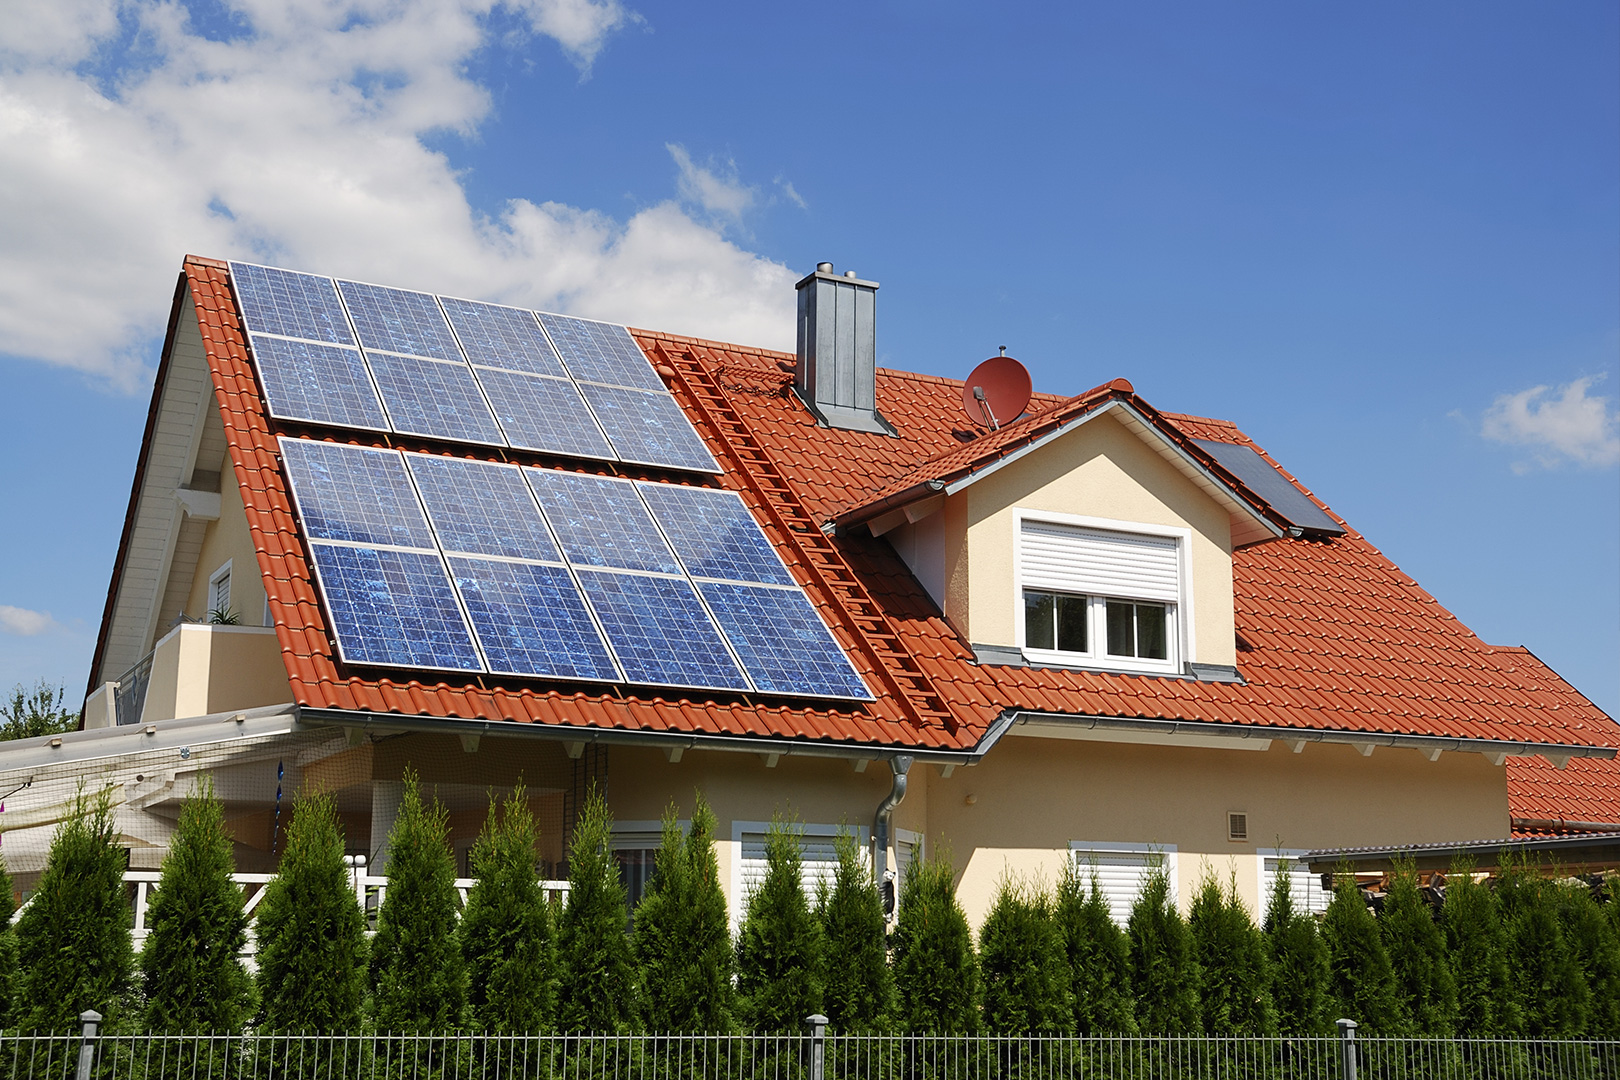 ¿Cómo funcionan los paneles solares?